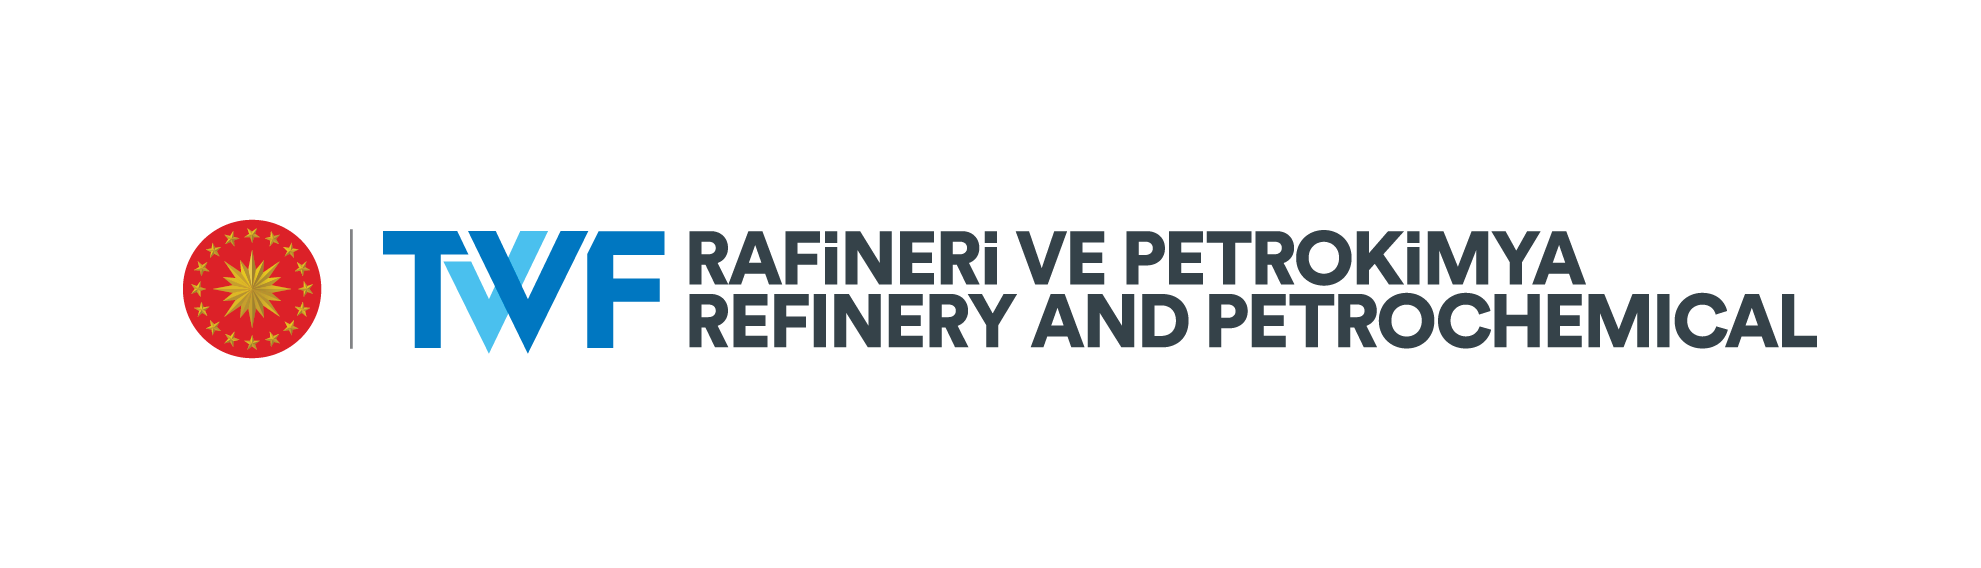 TVF Rafineri ve Petrokimya